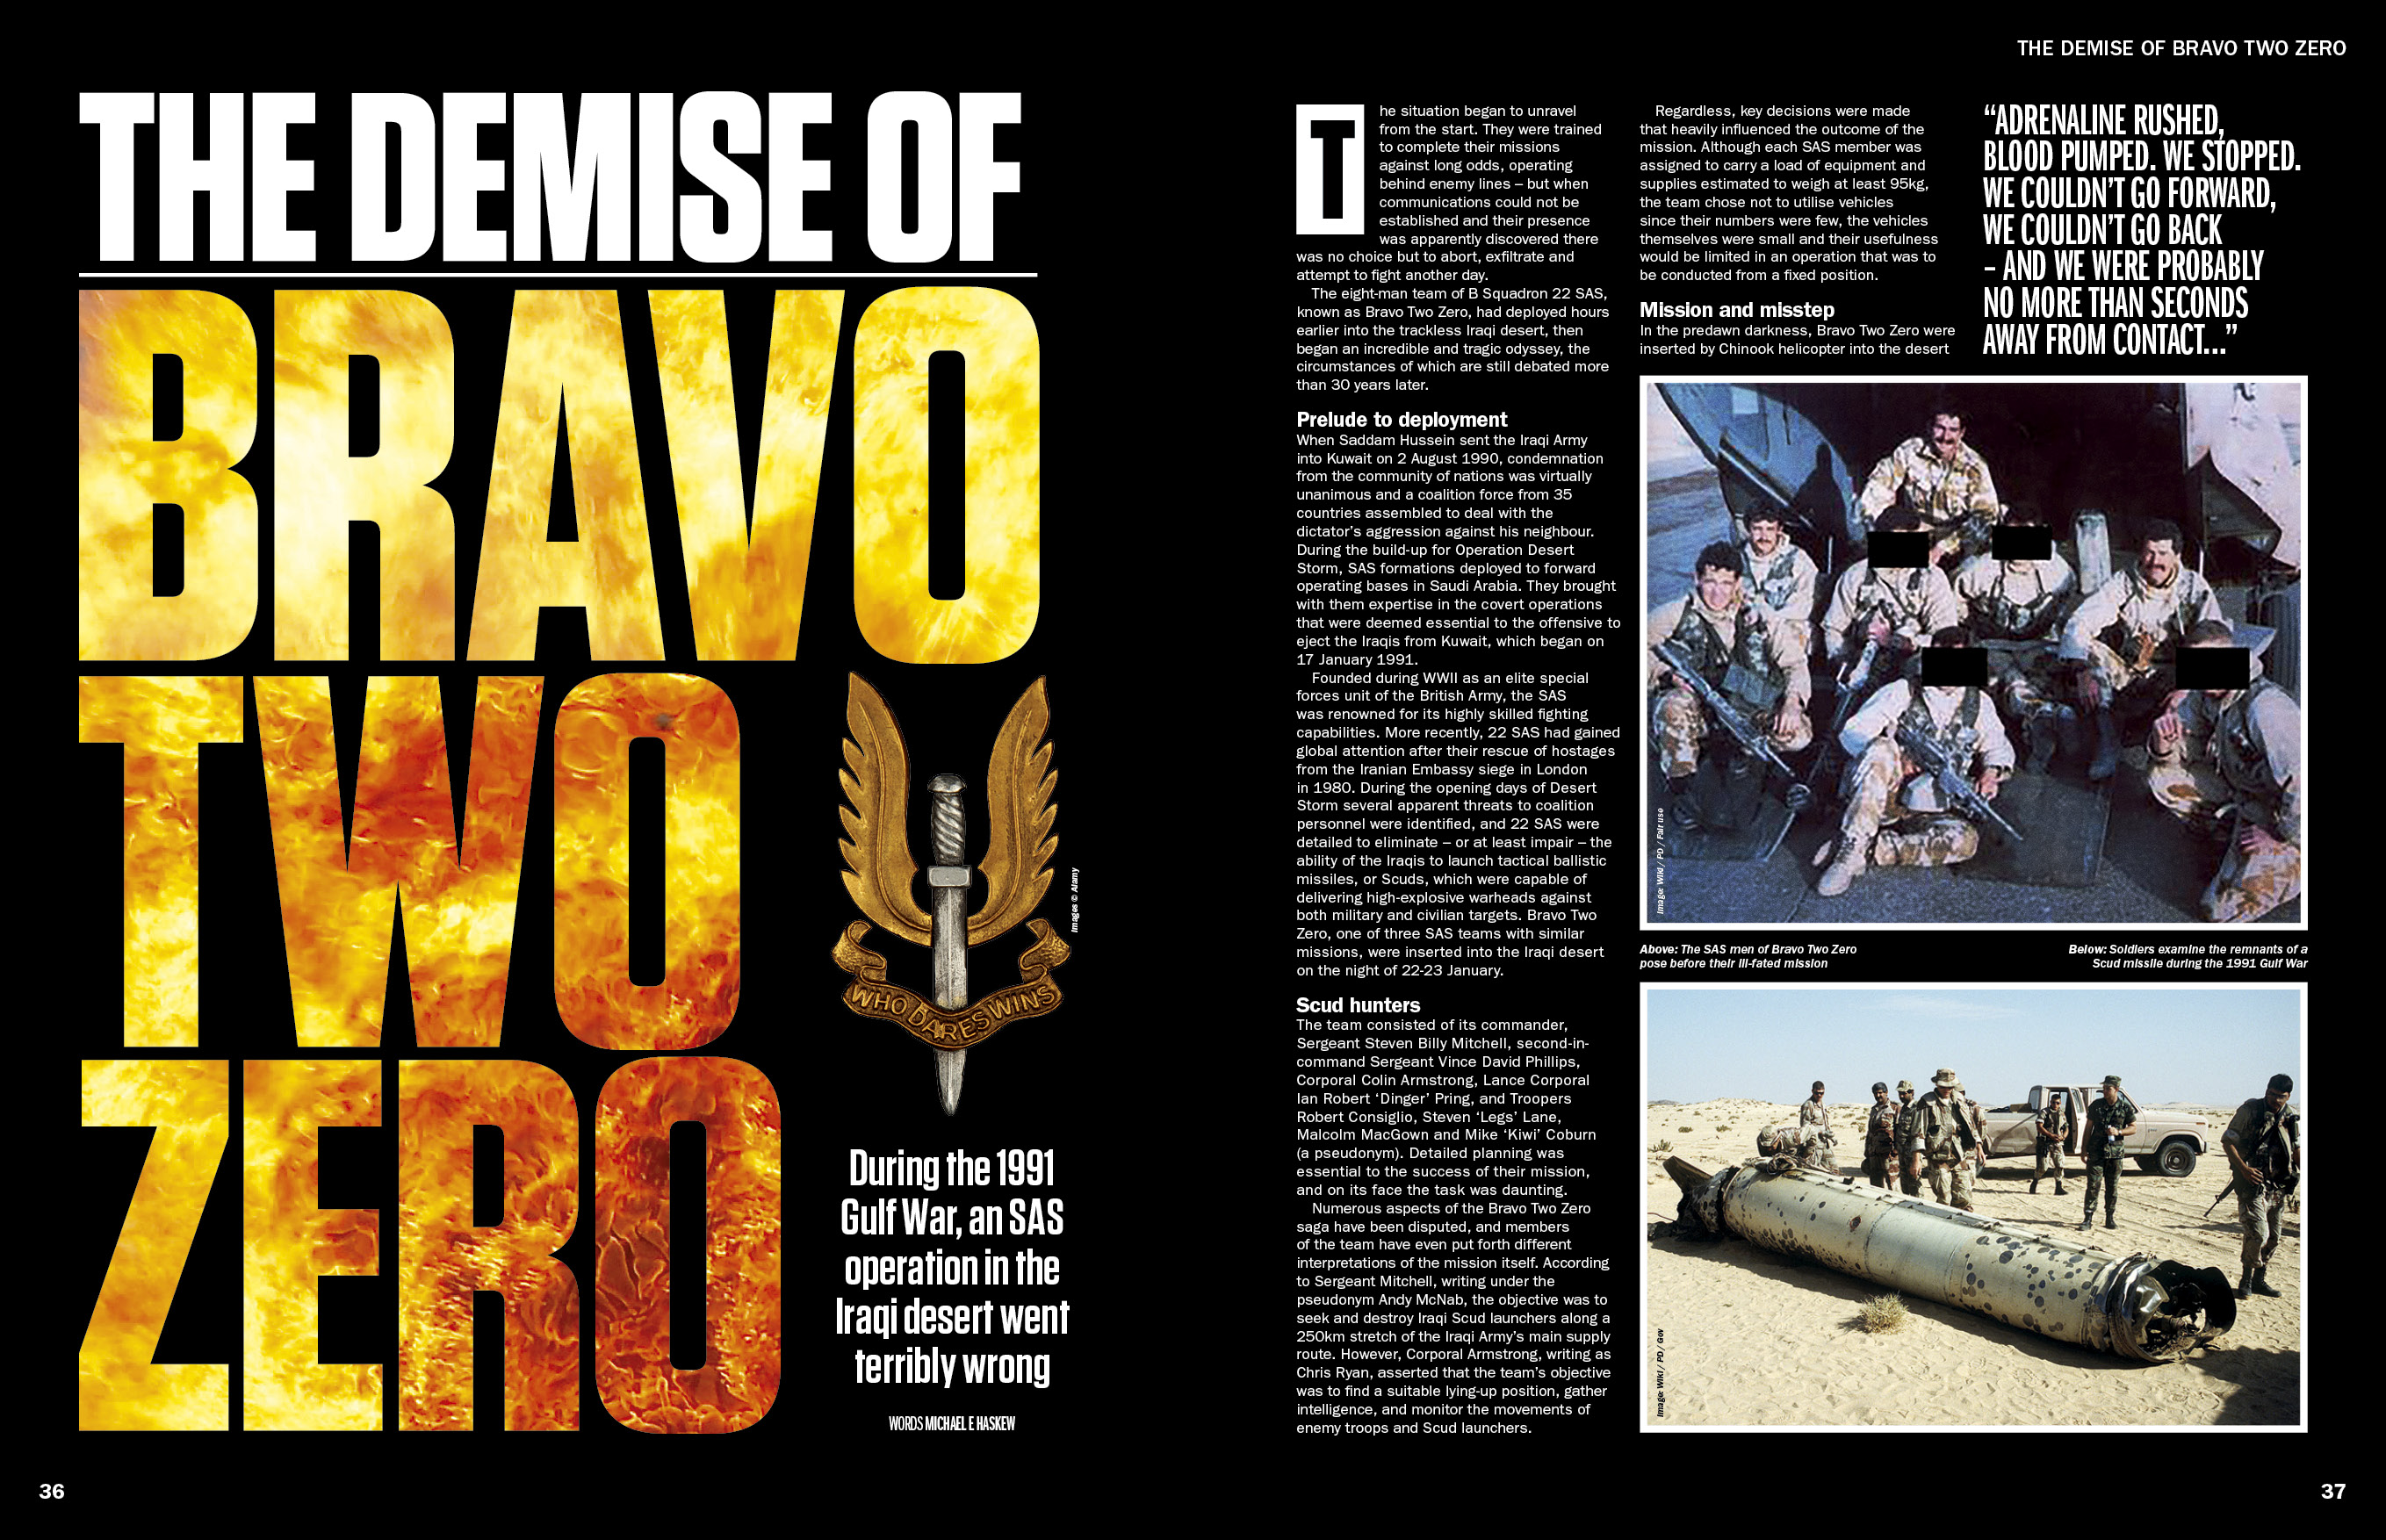 Revista Historia de la Guerra difundida en Bravo Two Zero